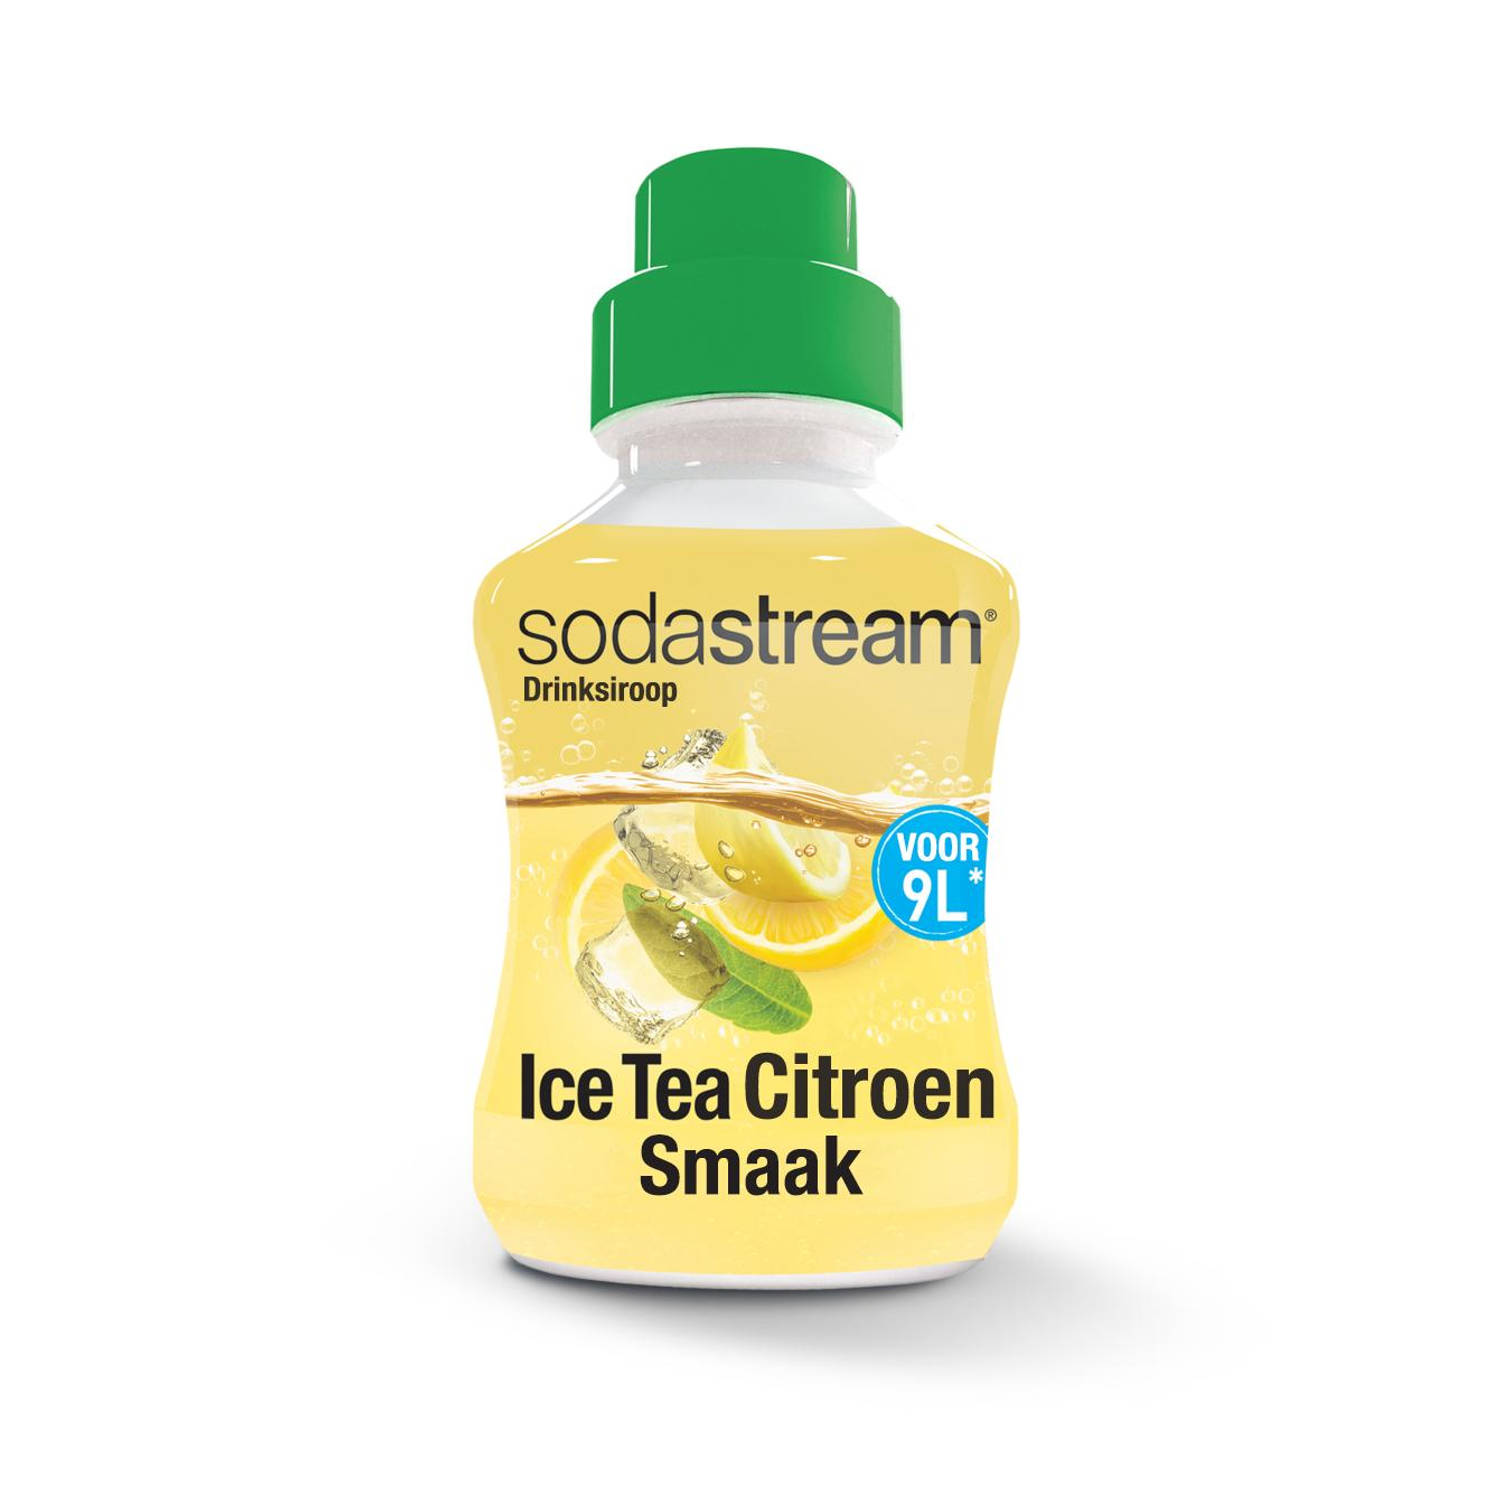 SodaStream siroop Classic - Ice Tea Lemon siroop - 375 ml